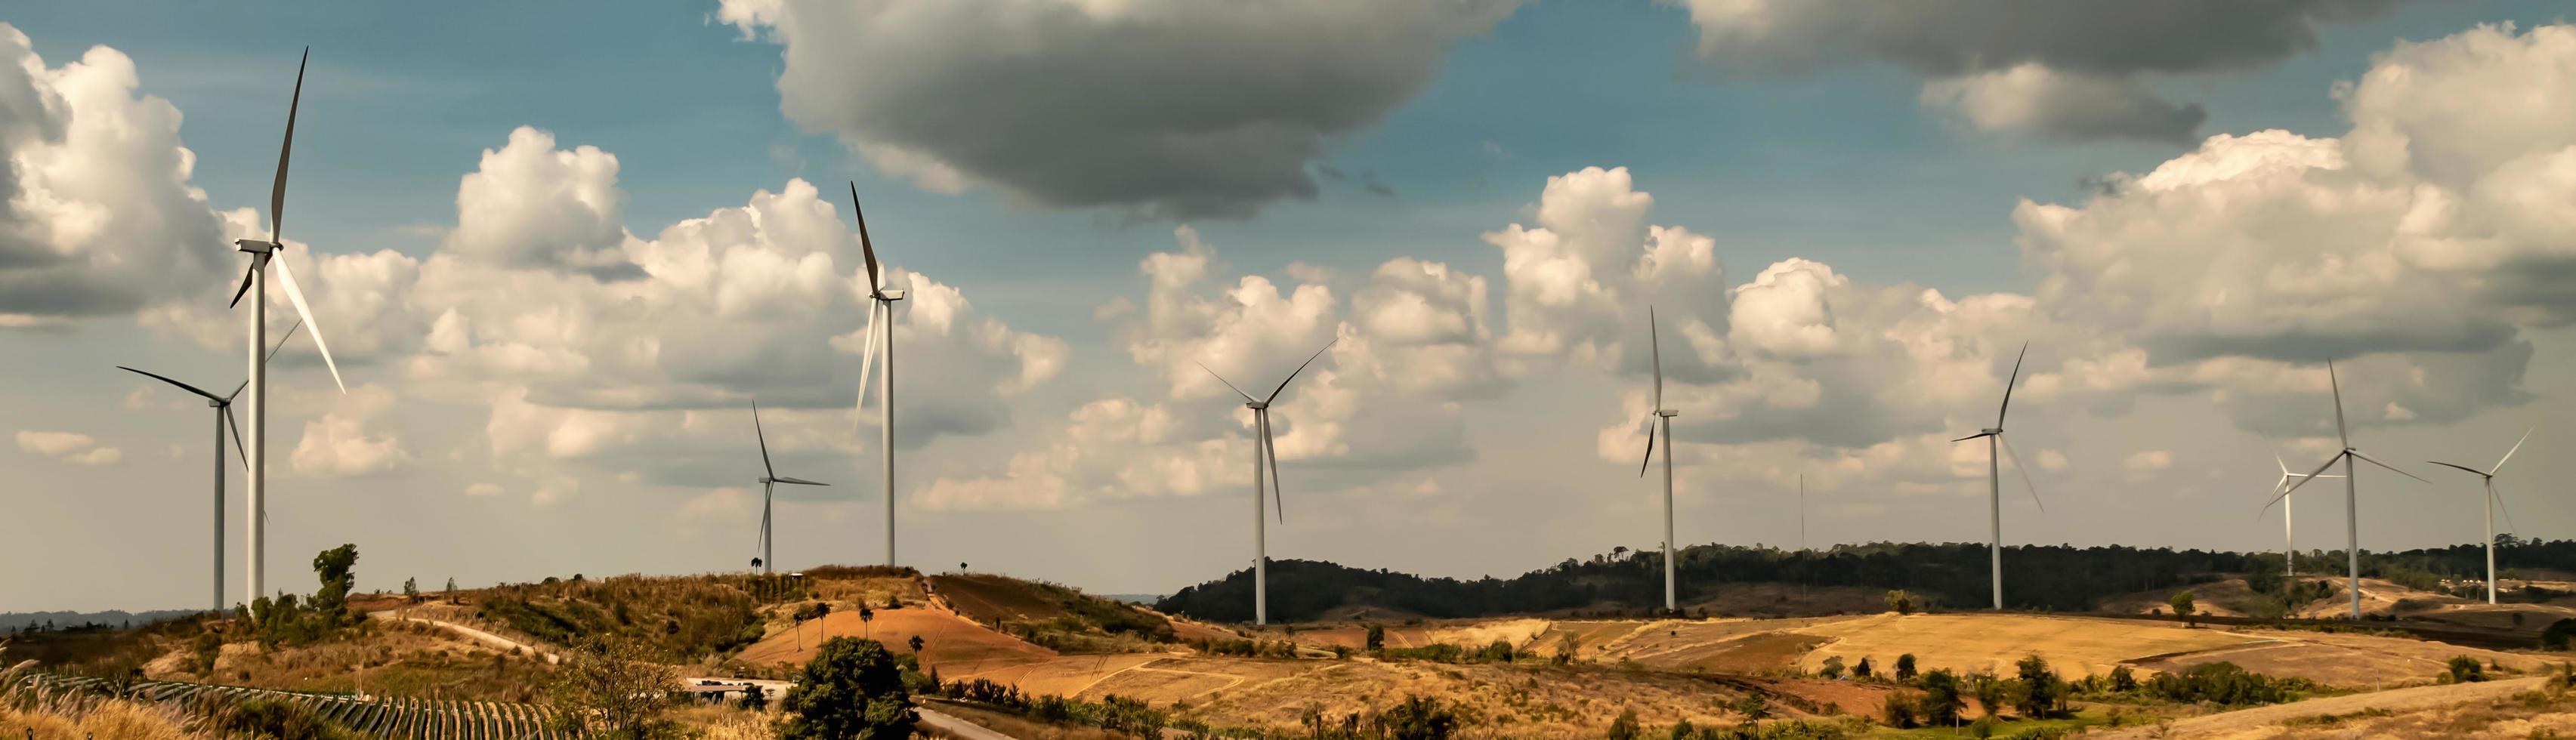 panorama vind turbin på kulle. energi kraft i natur. eco begrepp foto